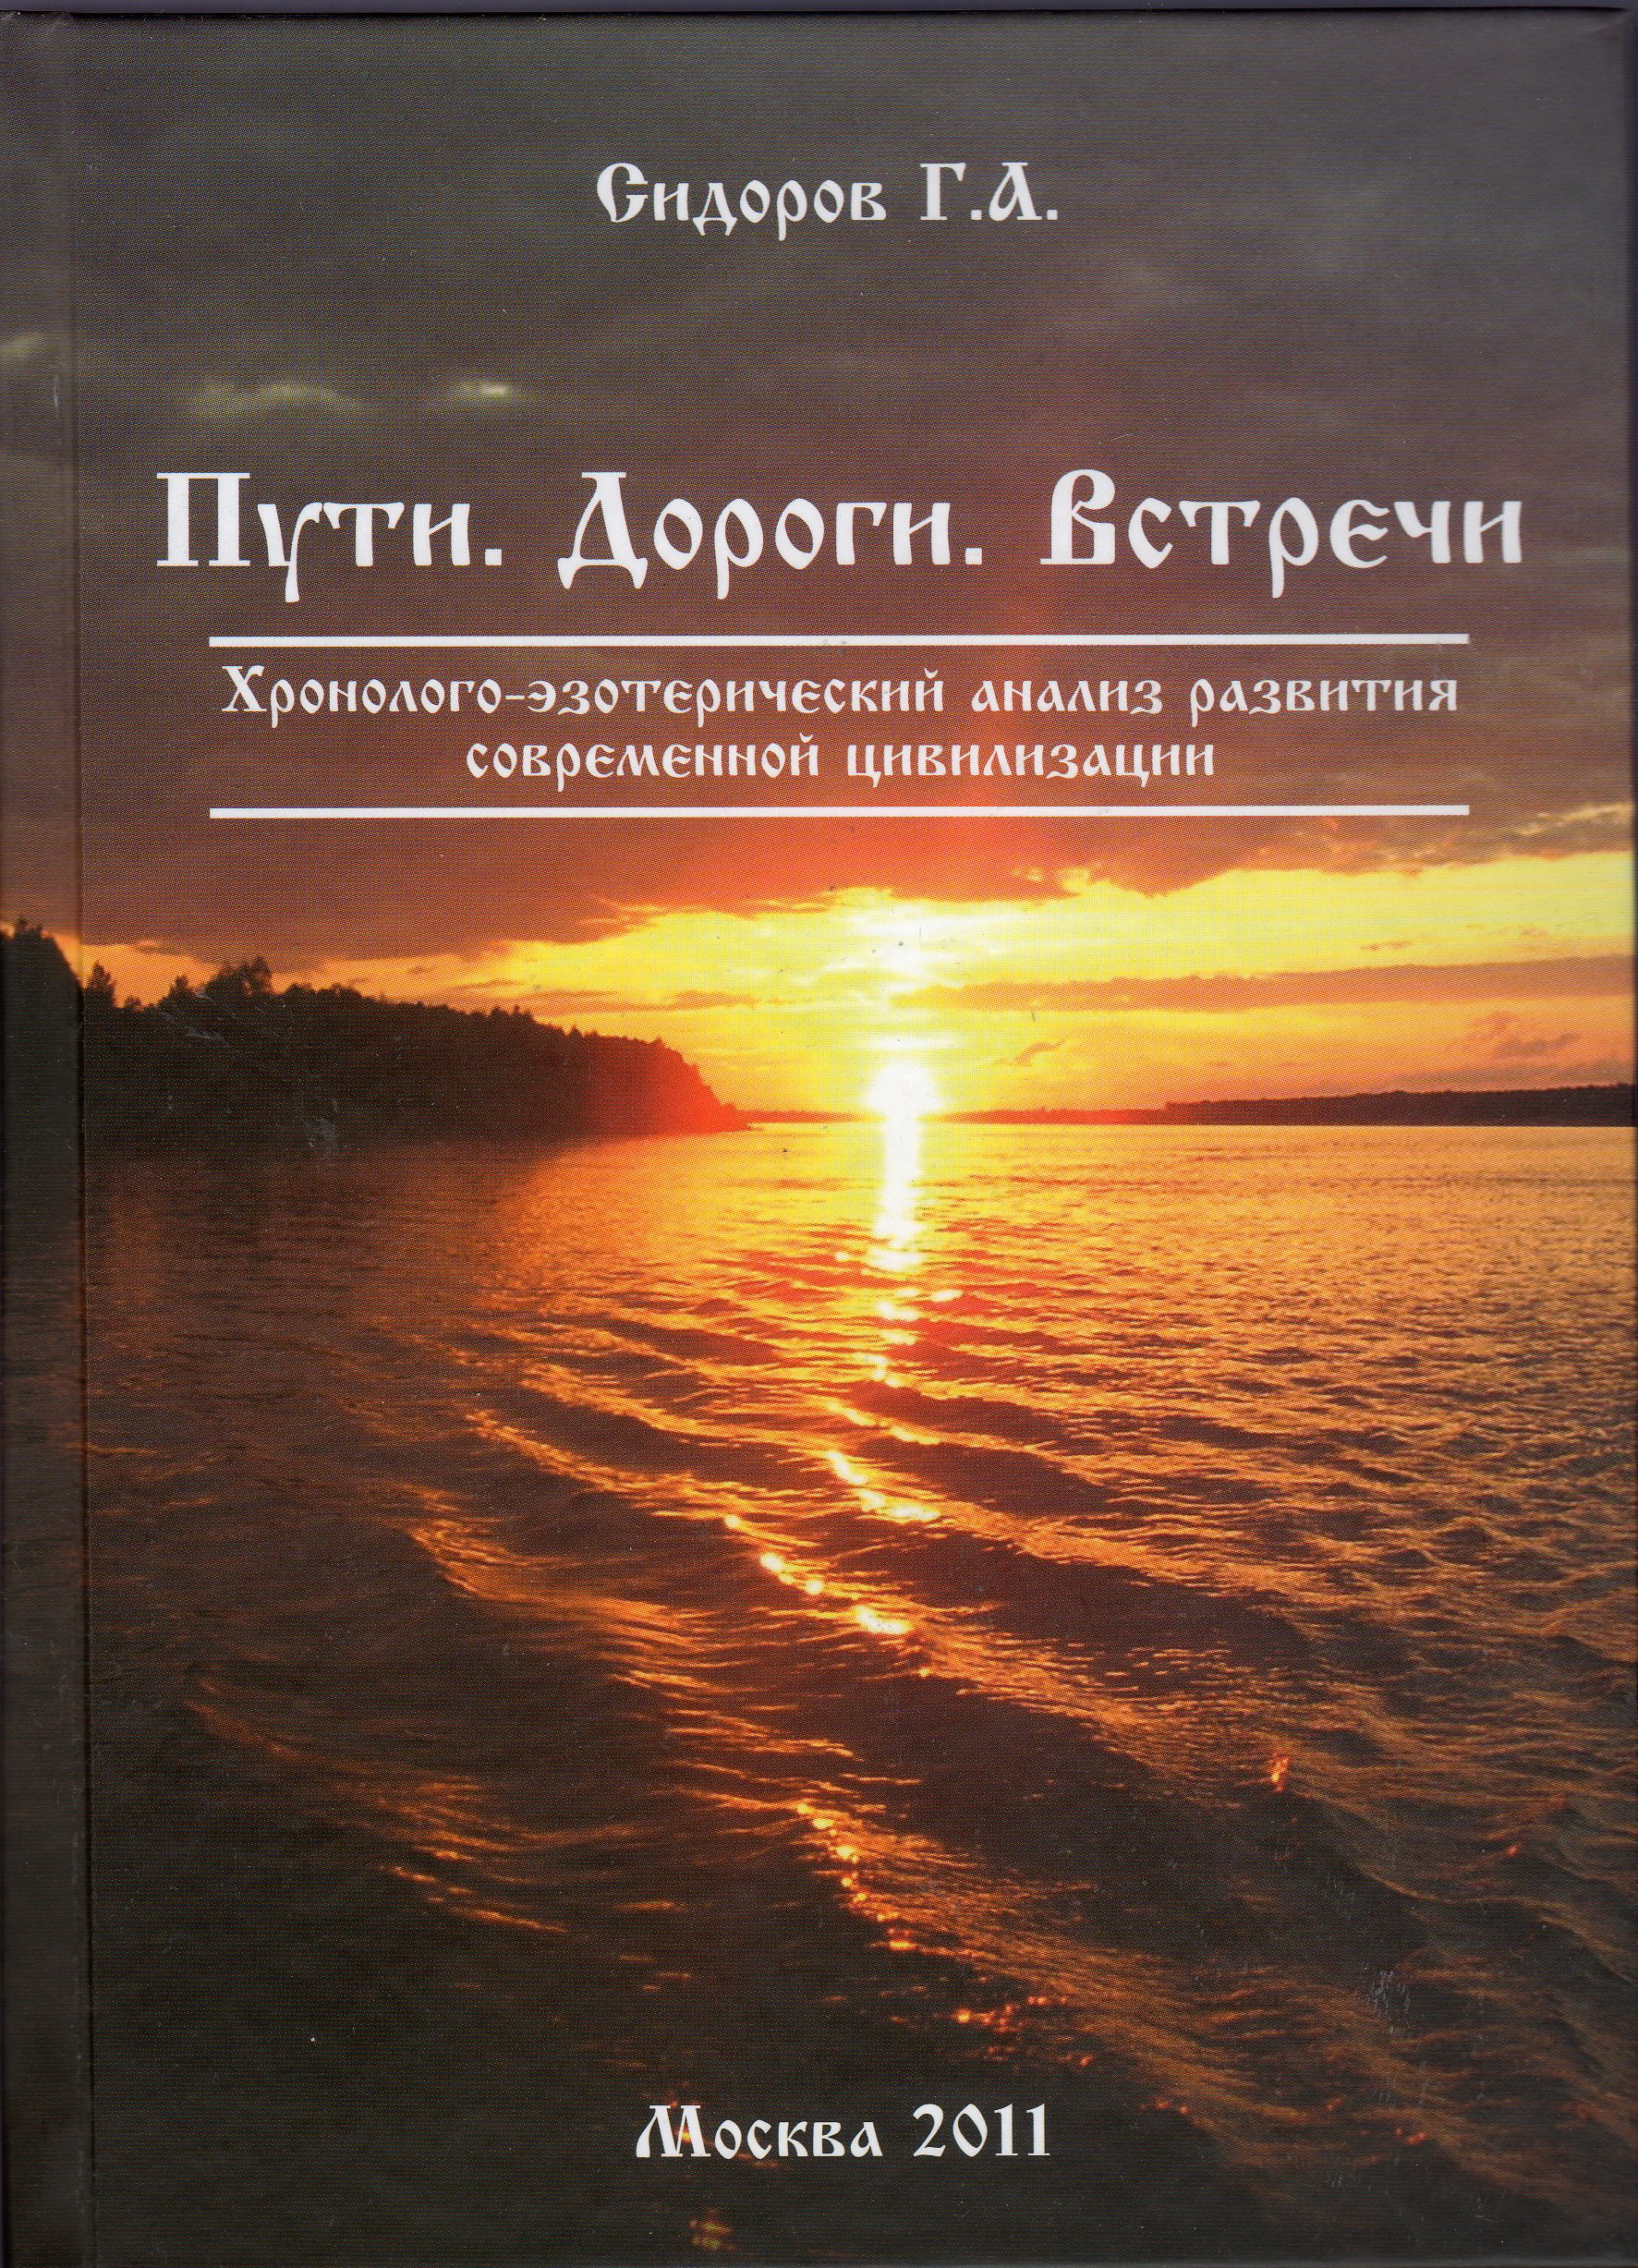 Г.А.Сидоров Книга 4 Книги